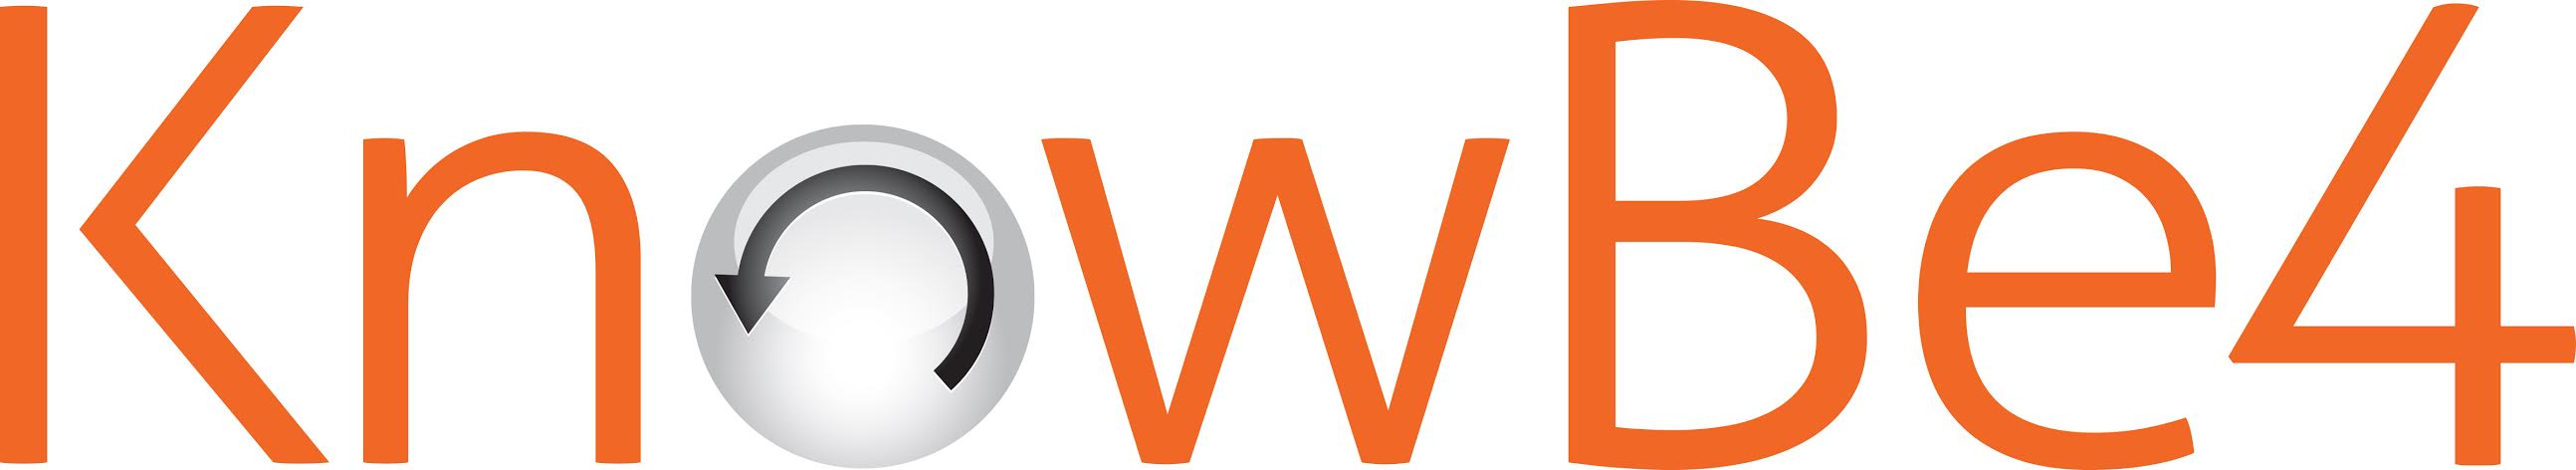 KnowBe4 Announces Wi